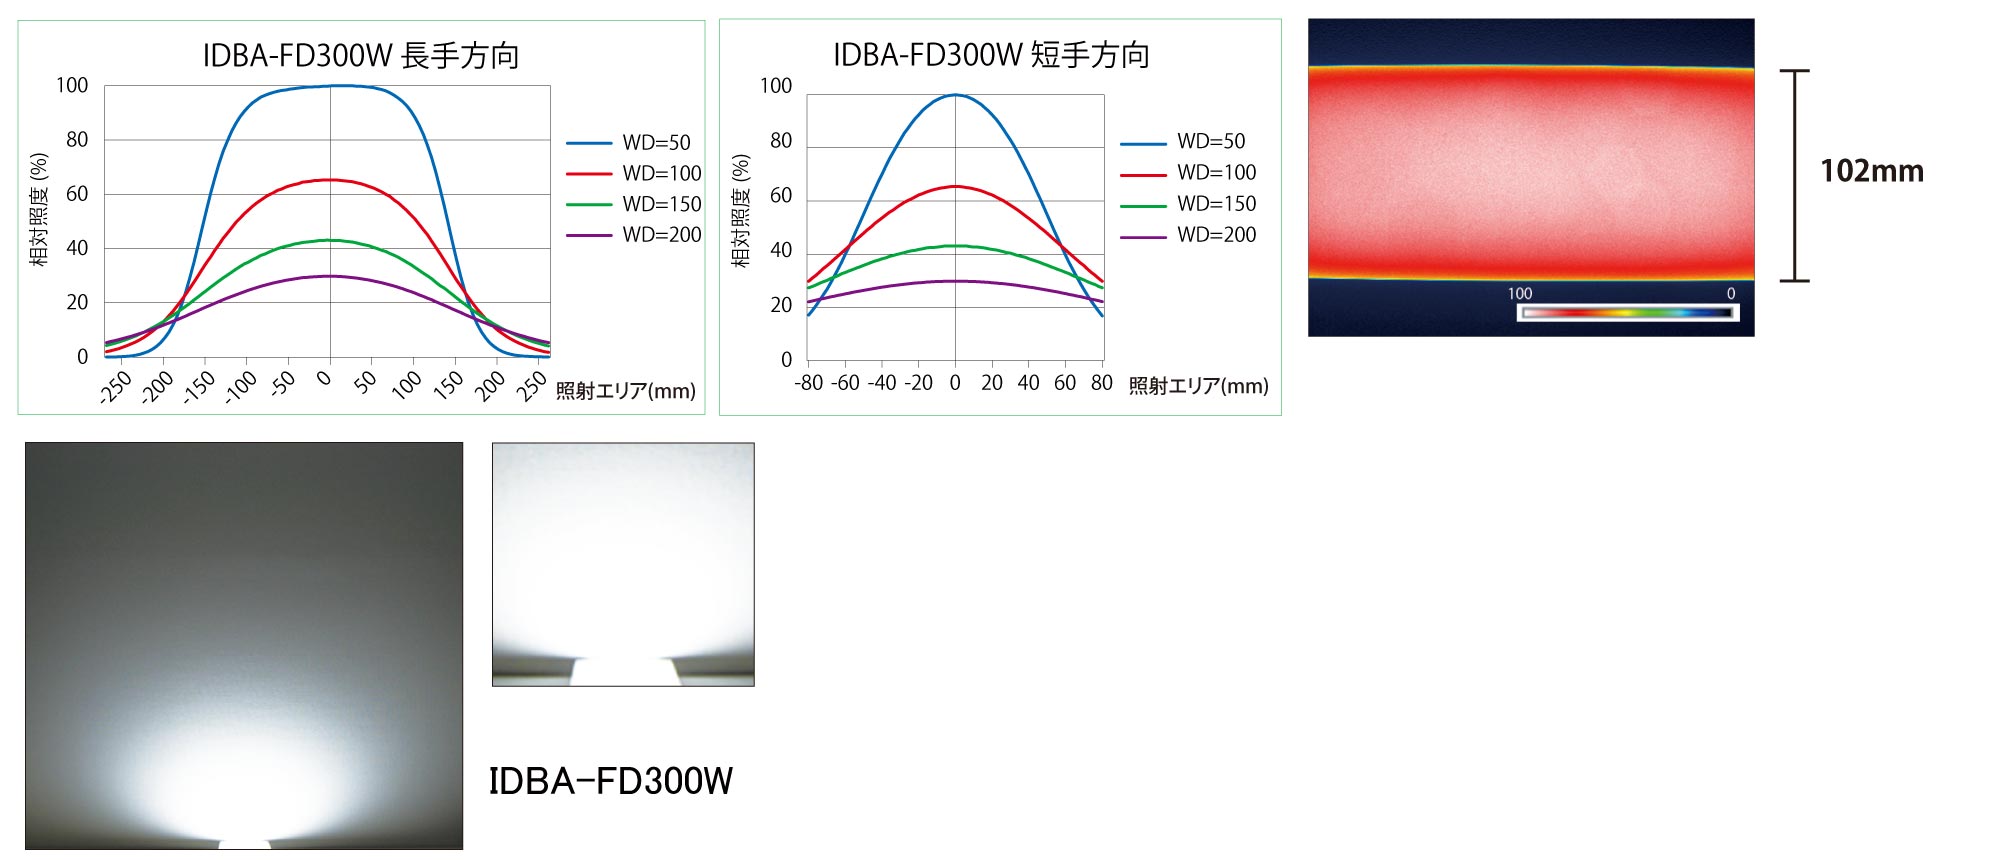 IDBA-FD-24V Product Description 02